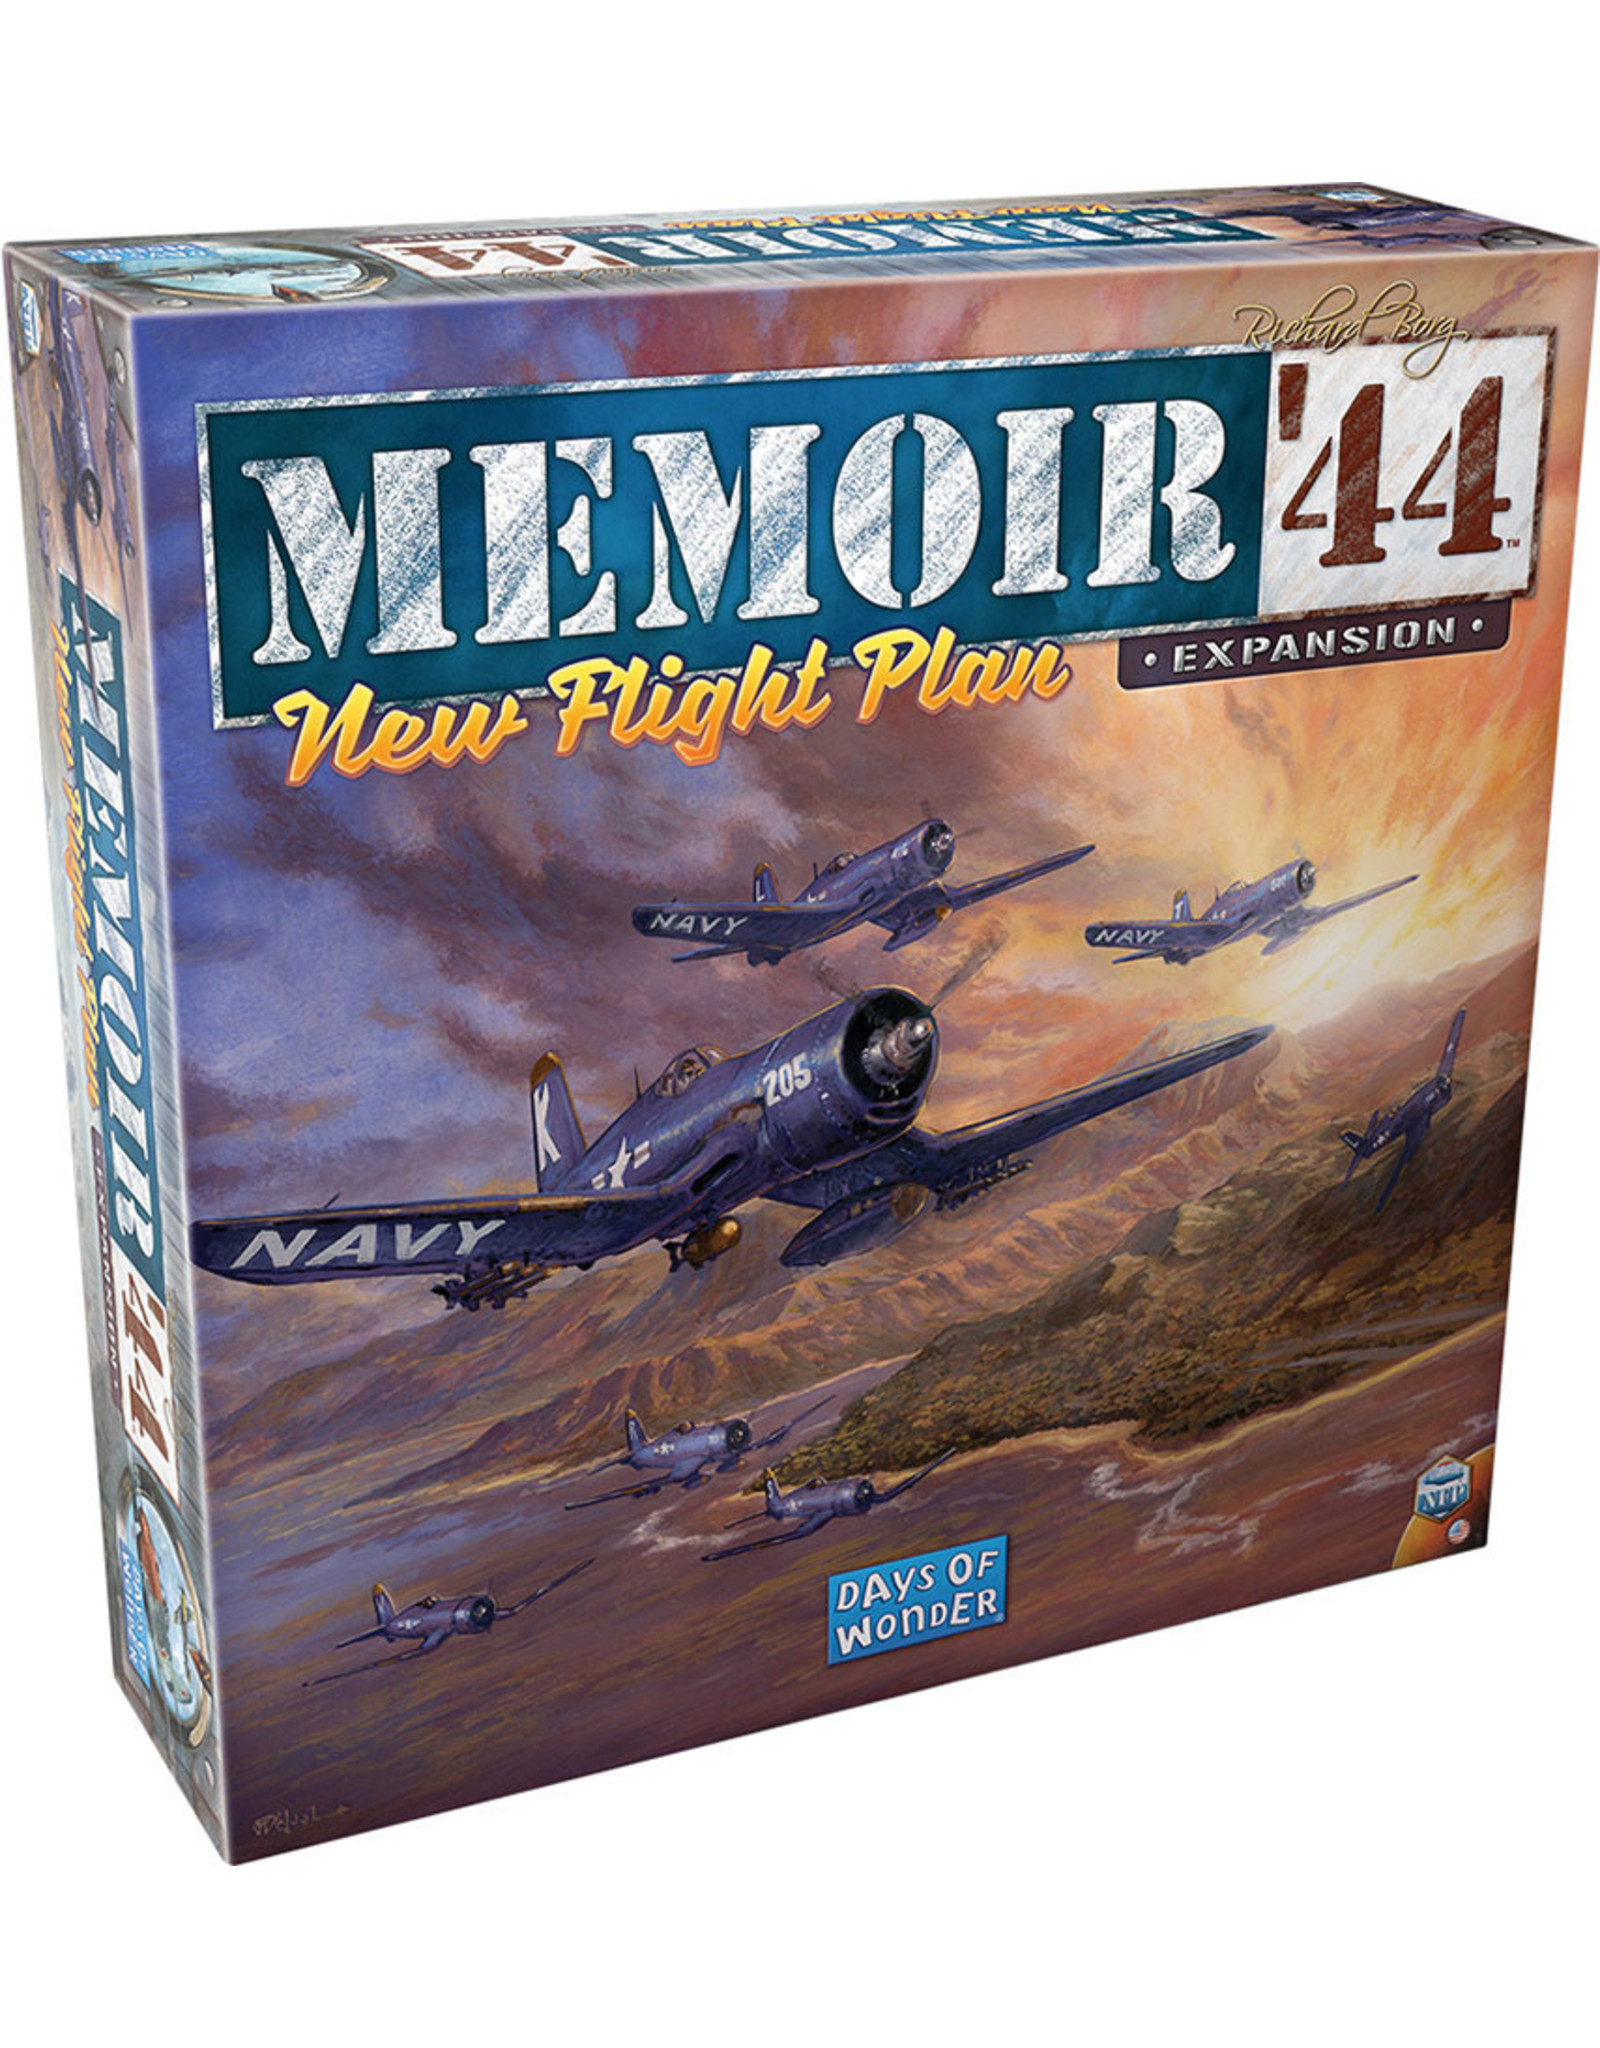 Memoir 44 Memoir 44 New Flight Plan